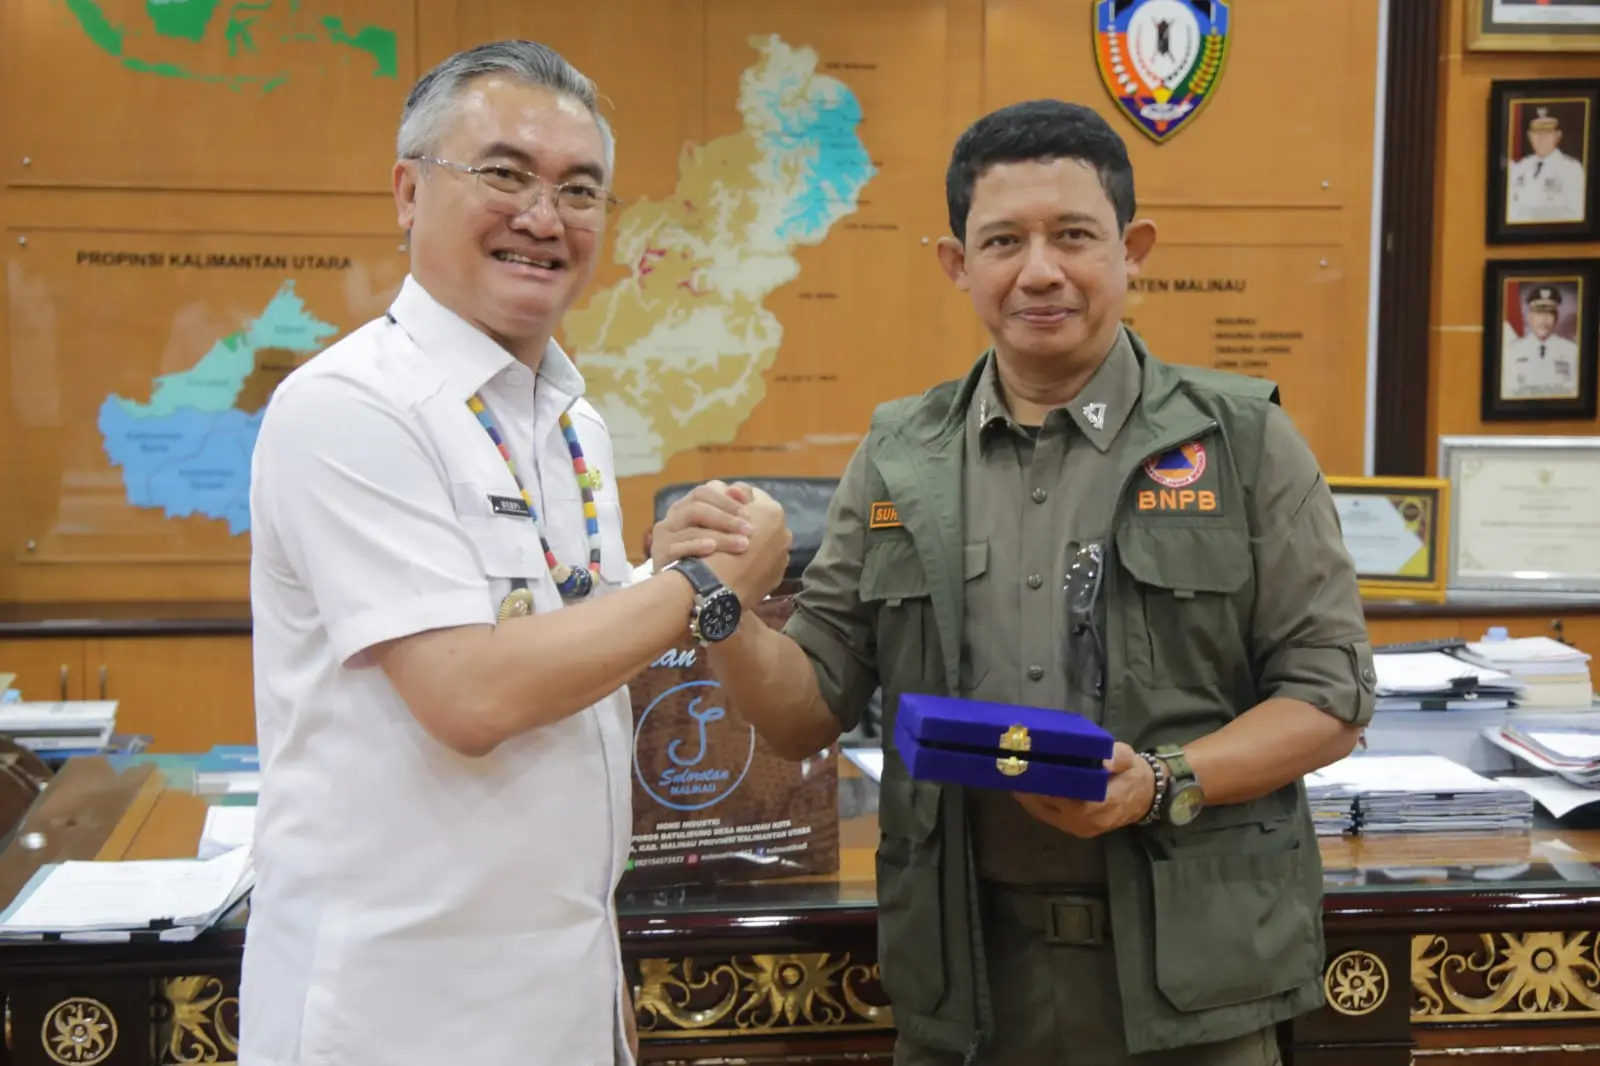 Kepala BNPB Letjen TNI Suharyanto, S.Sos., M.M. bersama Bupati Malinau pasca melakukan pertemuan di Kantor Bupati Malinau, Kalimantan Utara, Rabu (7/2).